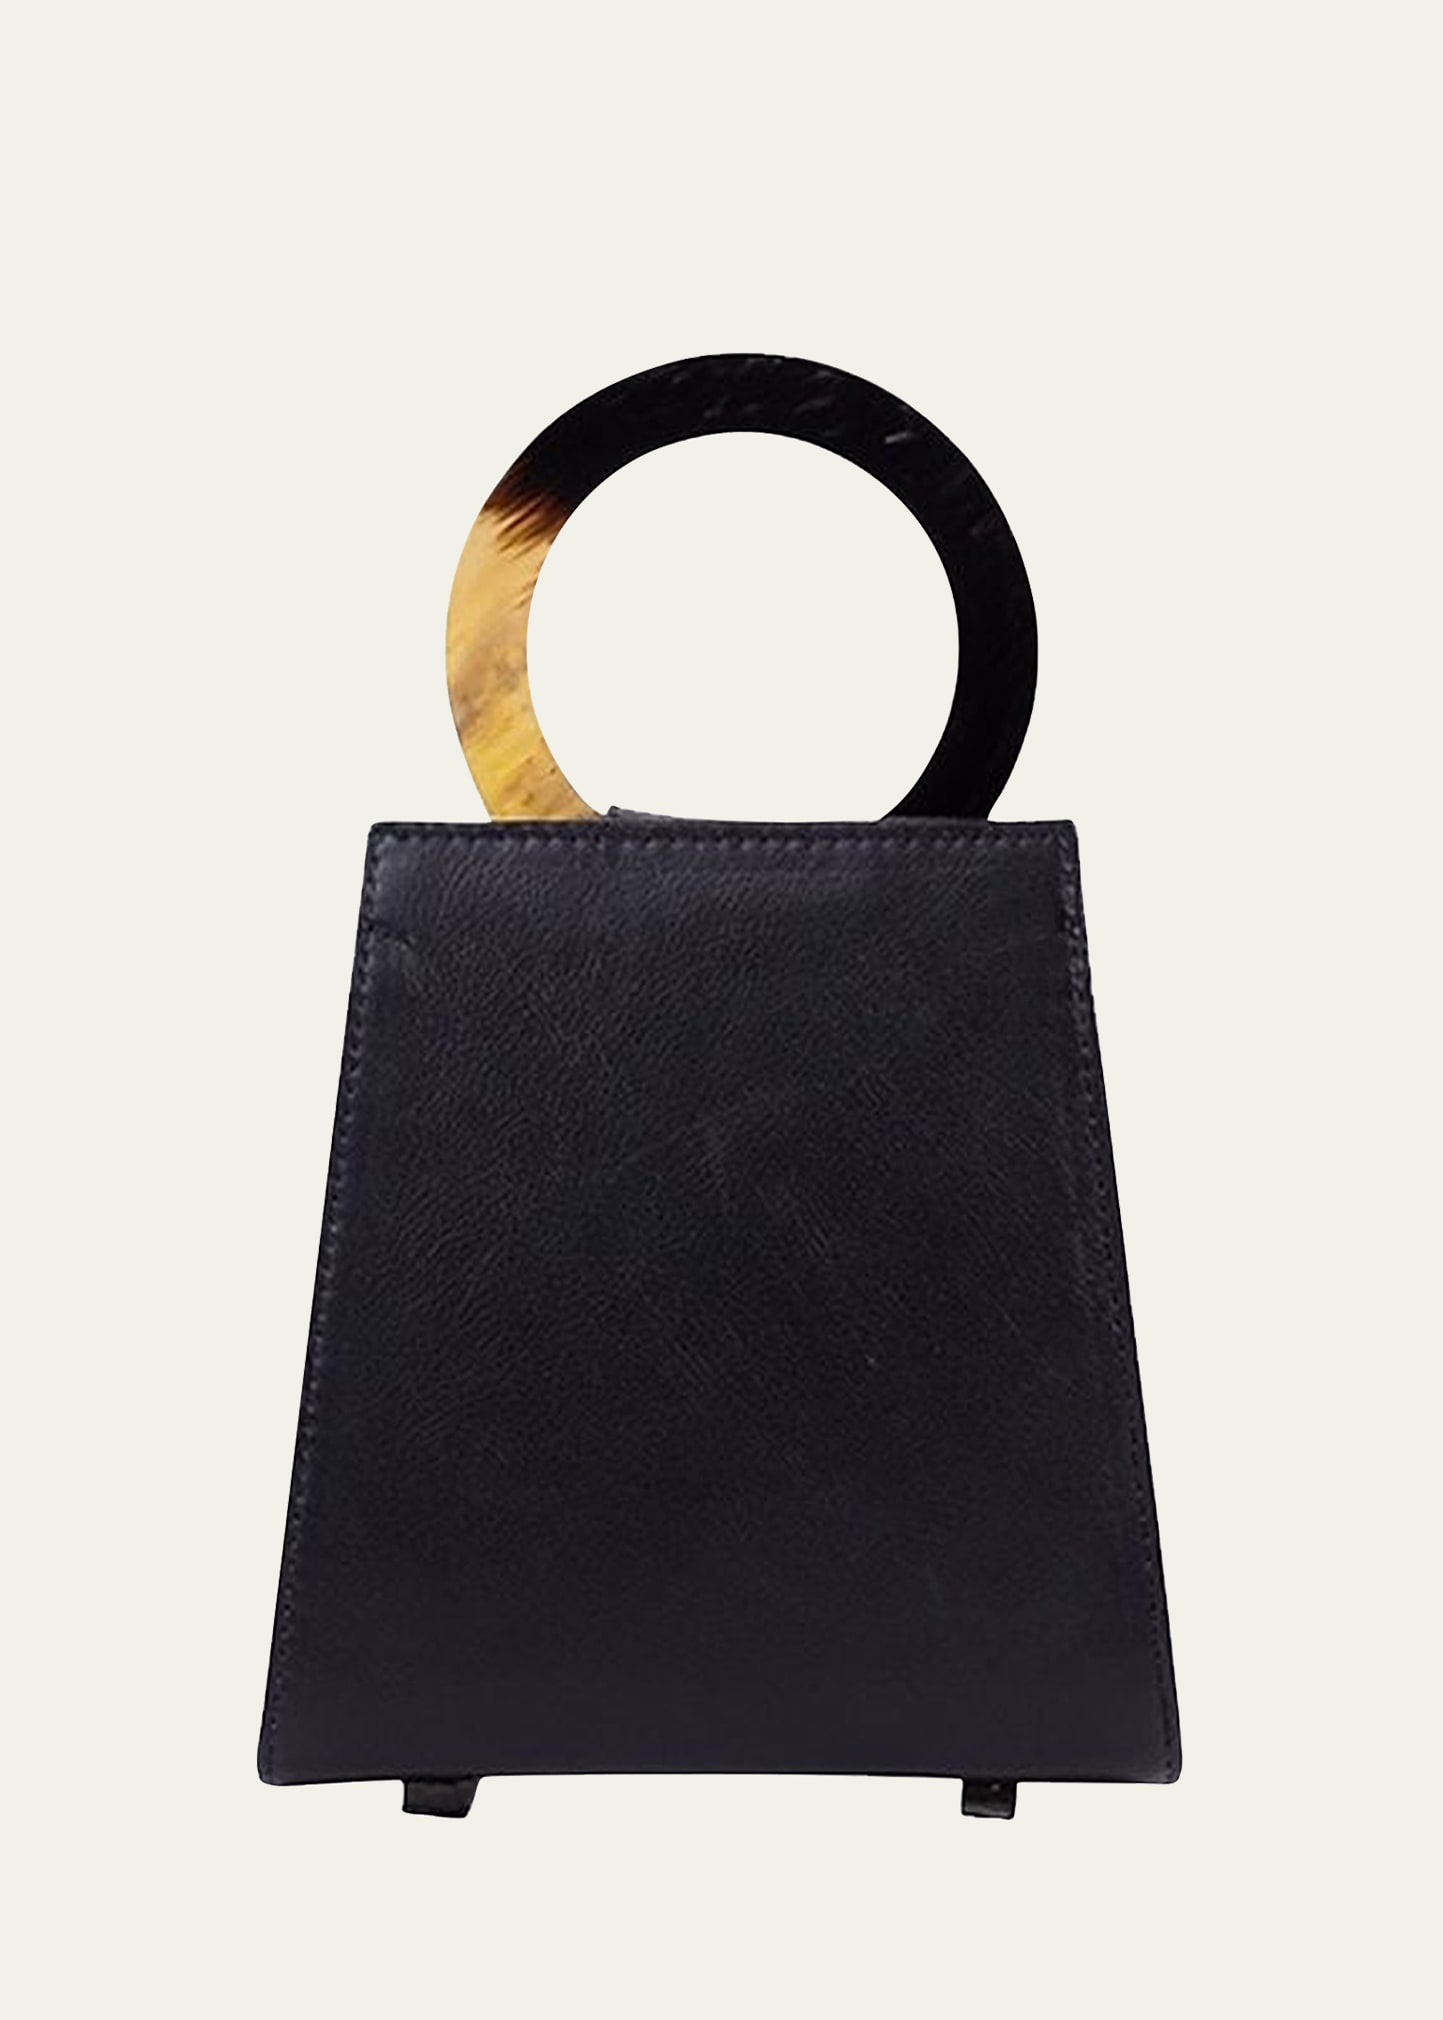 ADRIANA CASTRO Azza Mini Leather Top-Handle Bag